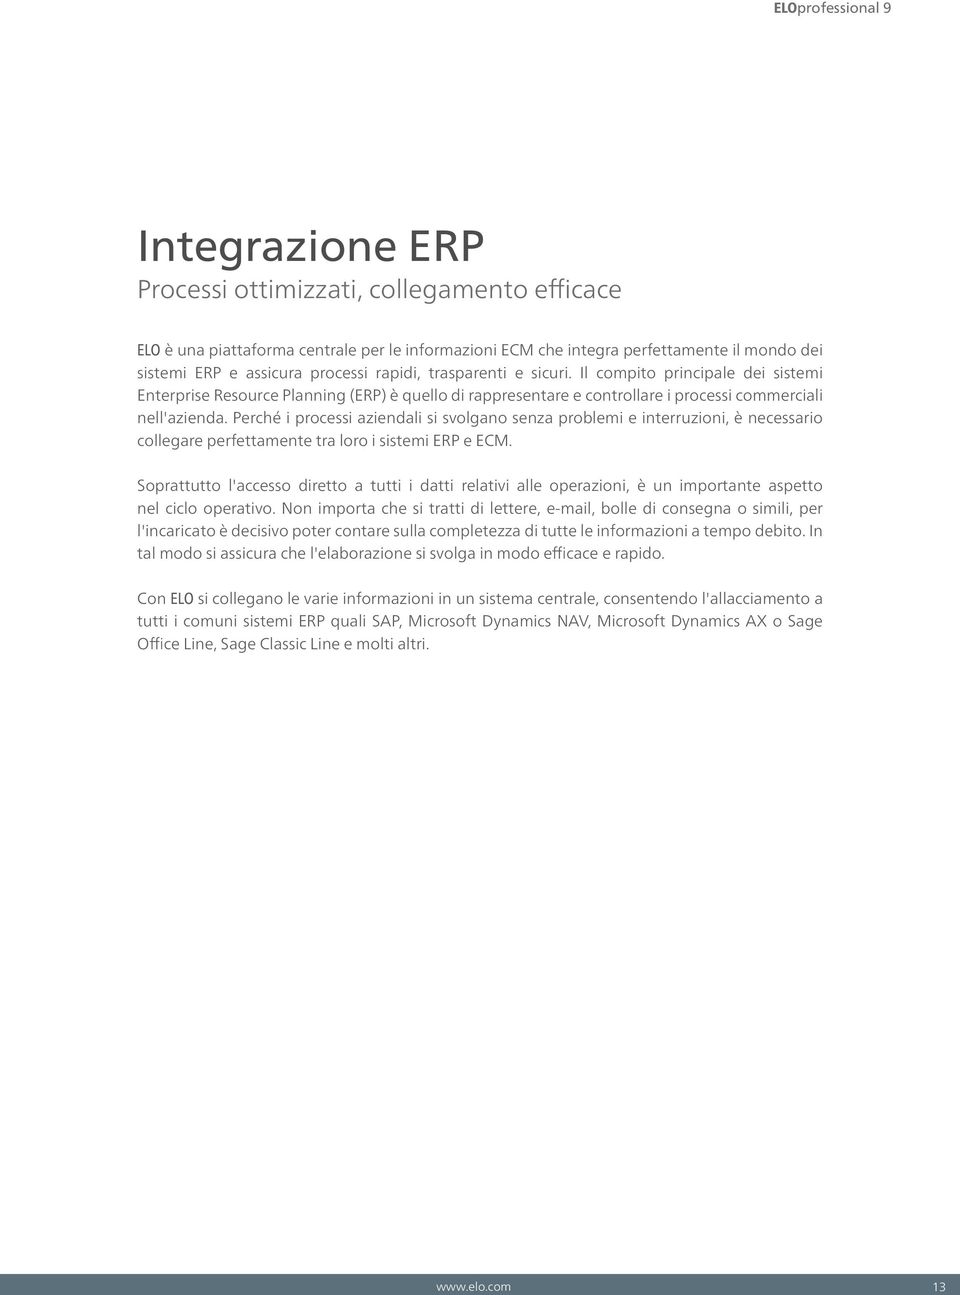 Perché i processi aziendali si svolgano senza problemi e interruzioni, è necessario collegare perfettamente tra loro i sistemi ERP e ECM.